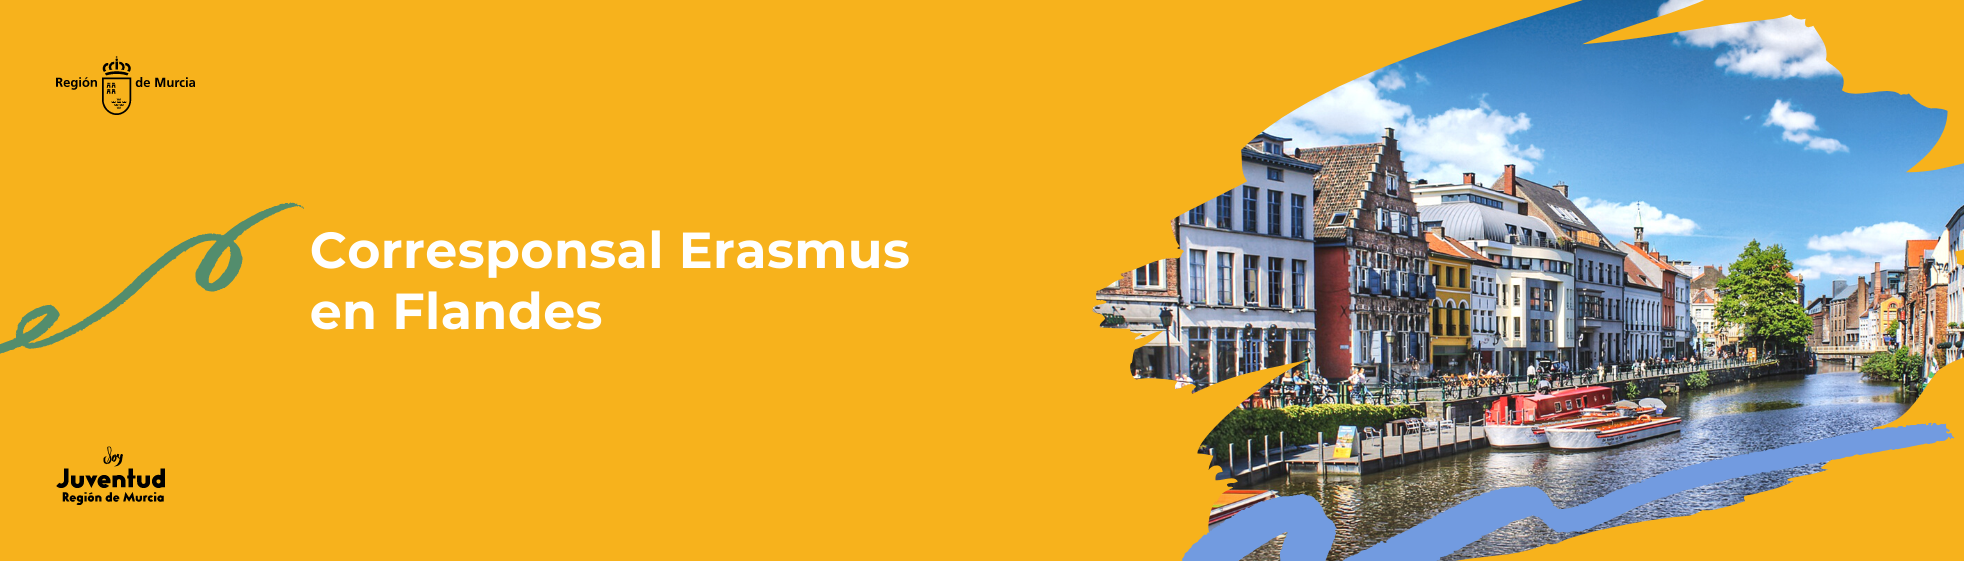 Corresponsal Erasmus en Flandes